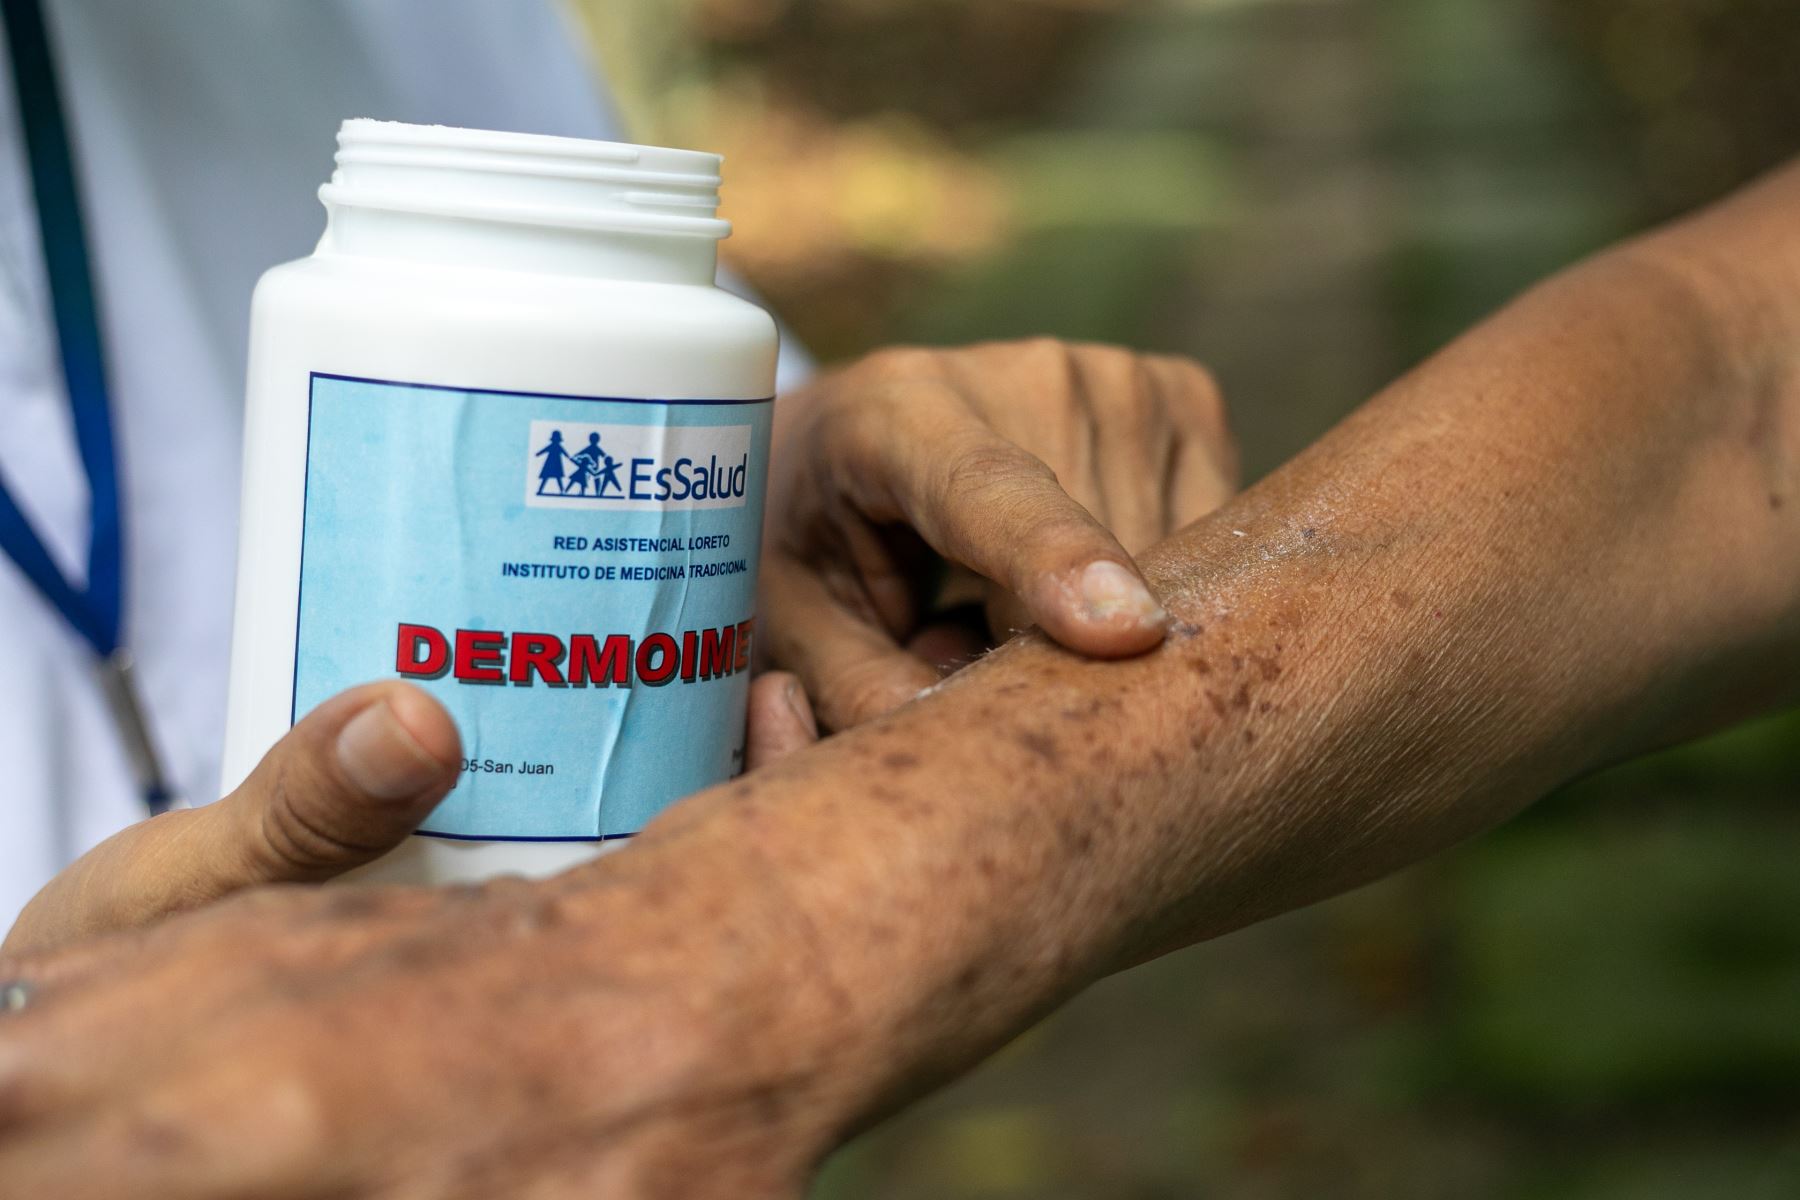 La pomada Dermoimet tiene efectos cicatrizantes y anti inflamatorios, y puede aplicarse para aliviar psoriasis en estado inicial, por ejemplo. ANDINA/ IMET.